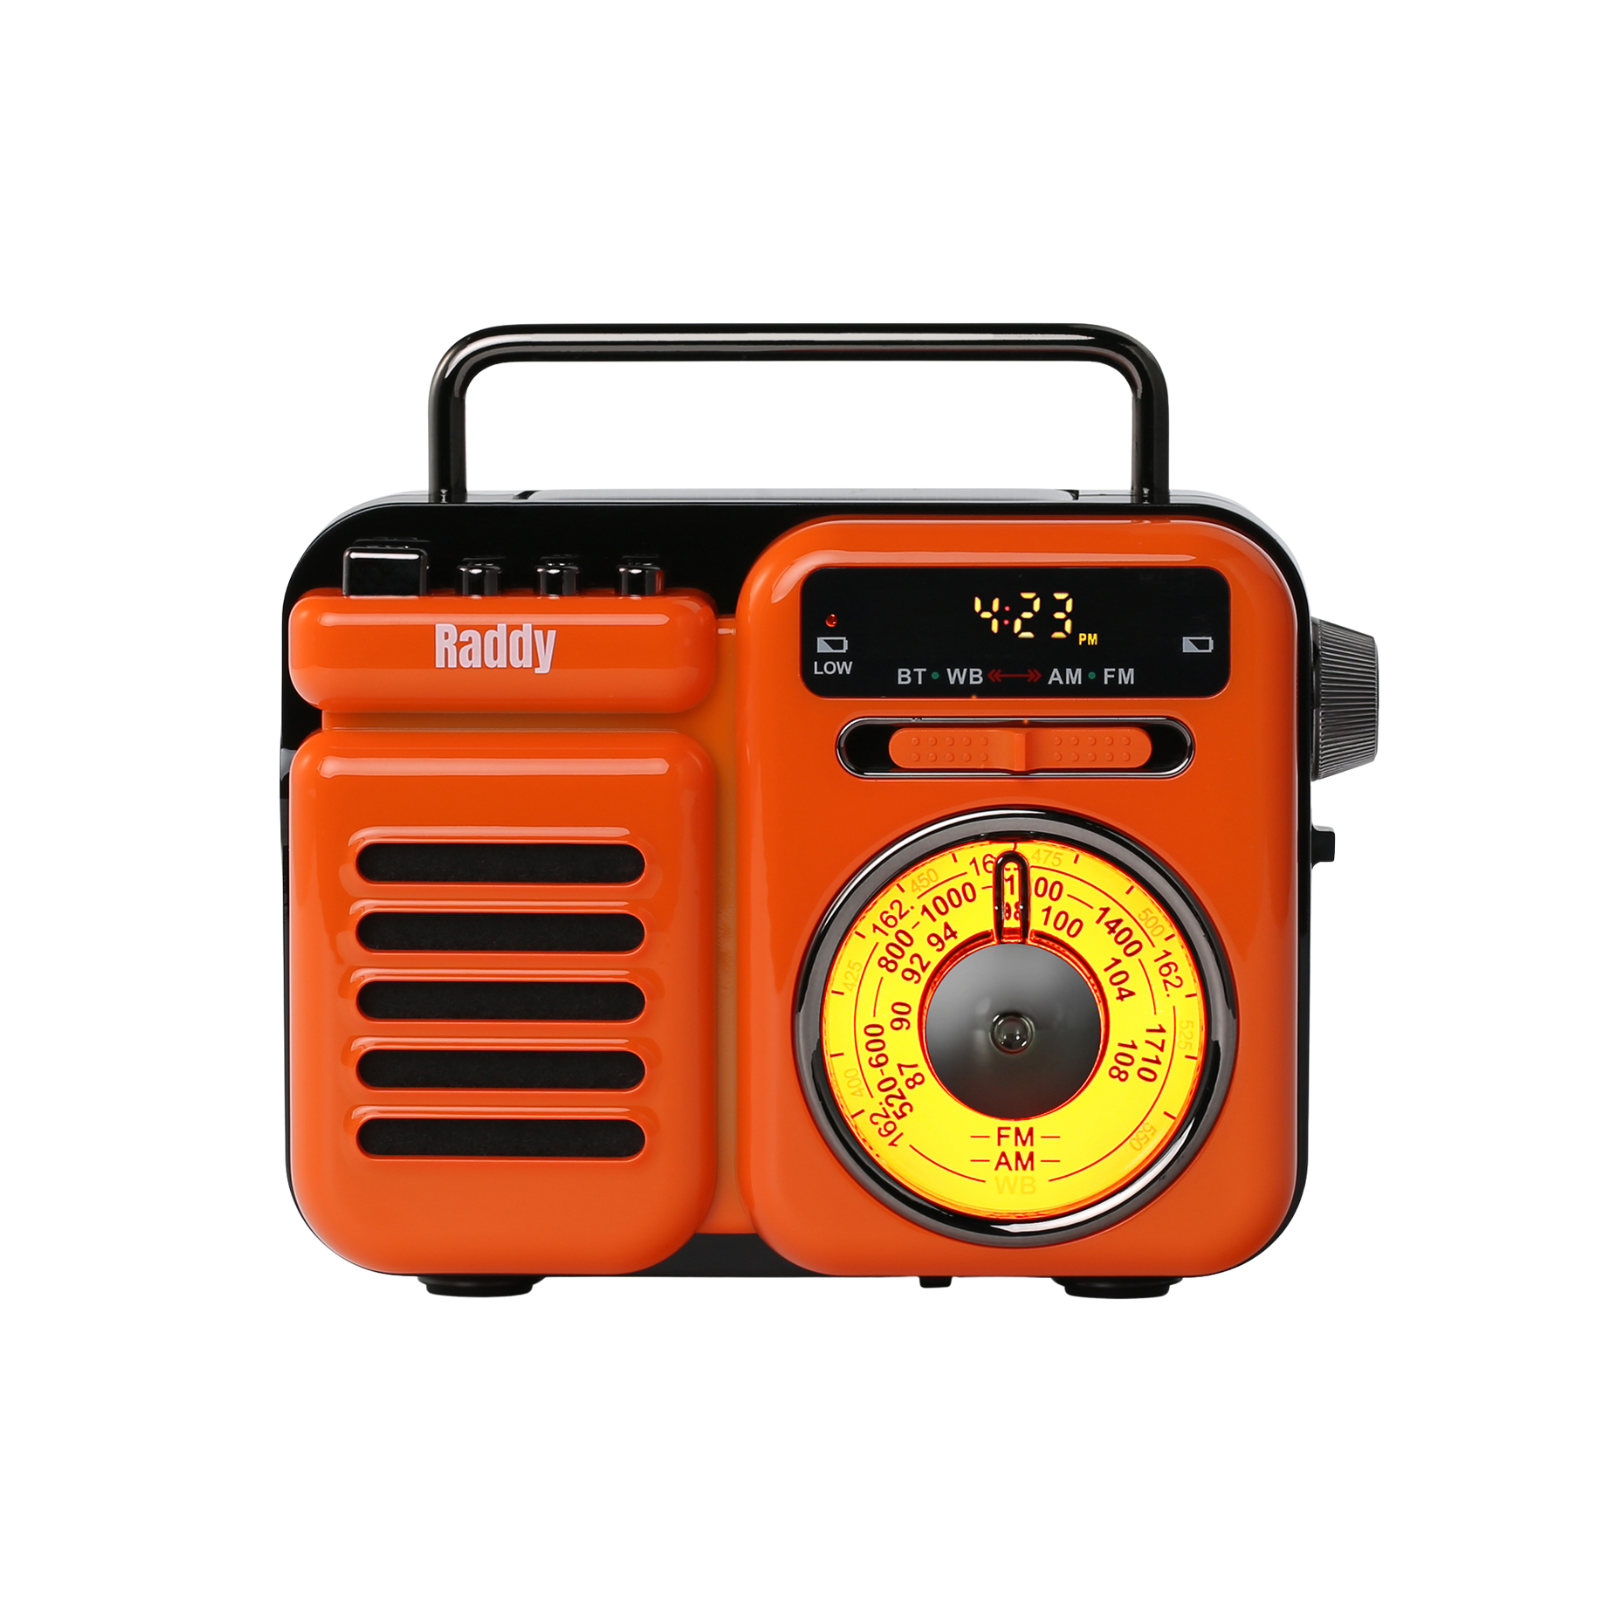 RW3 Emergency Radio